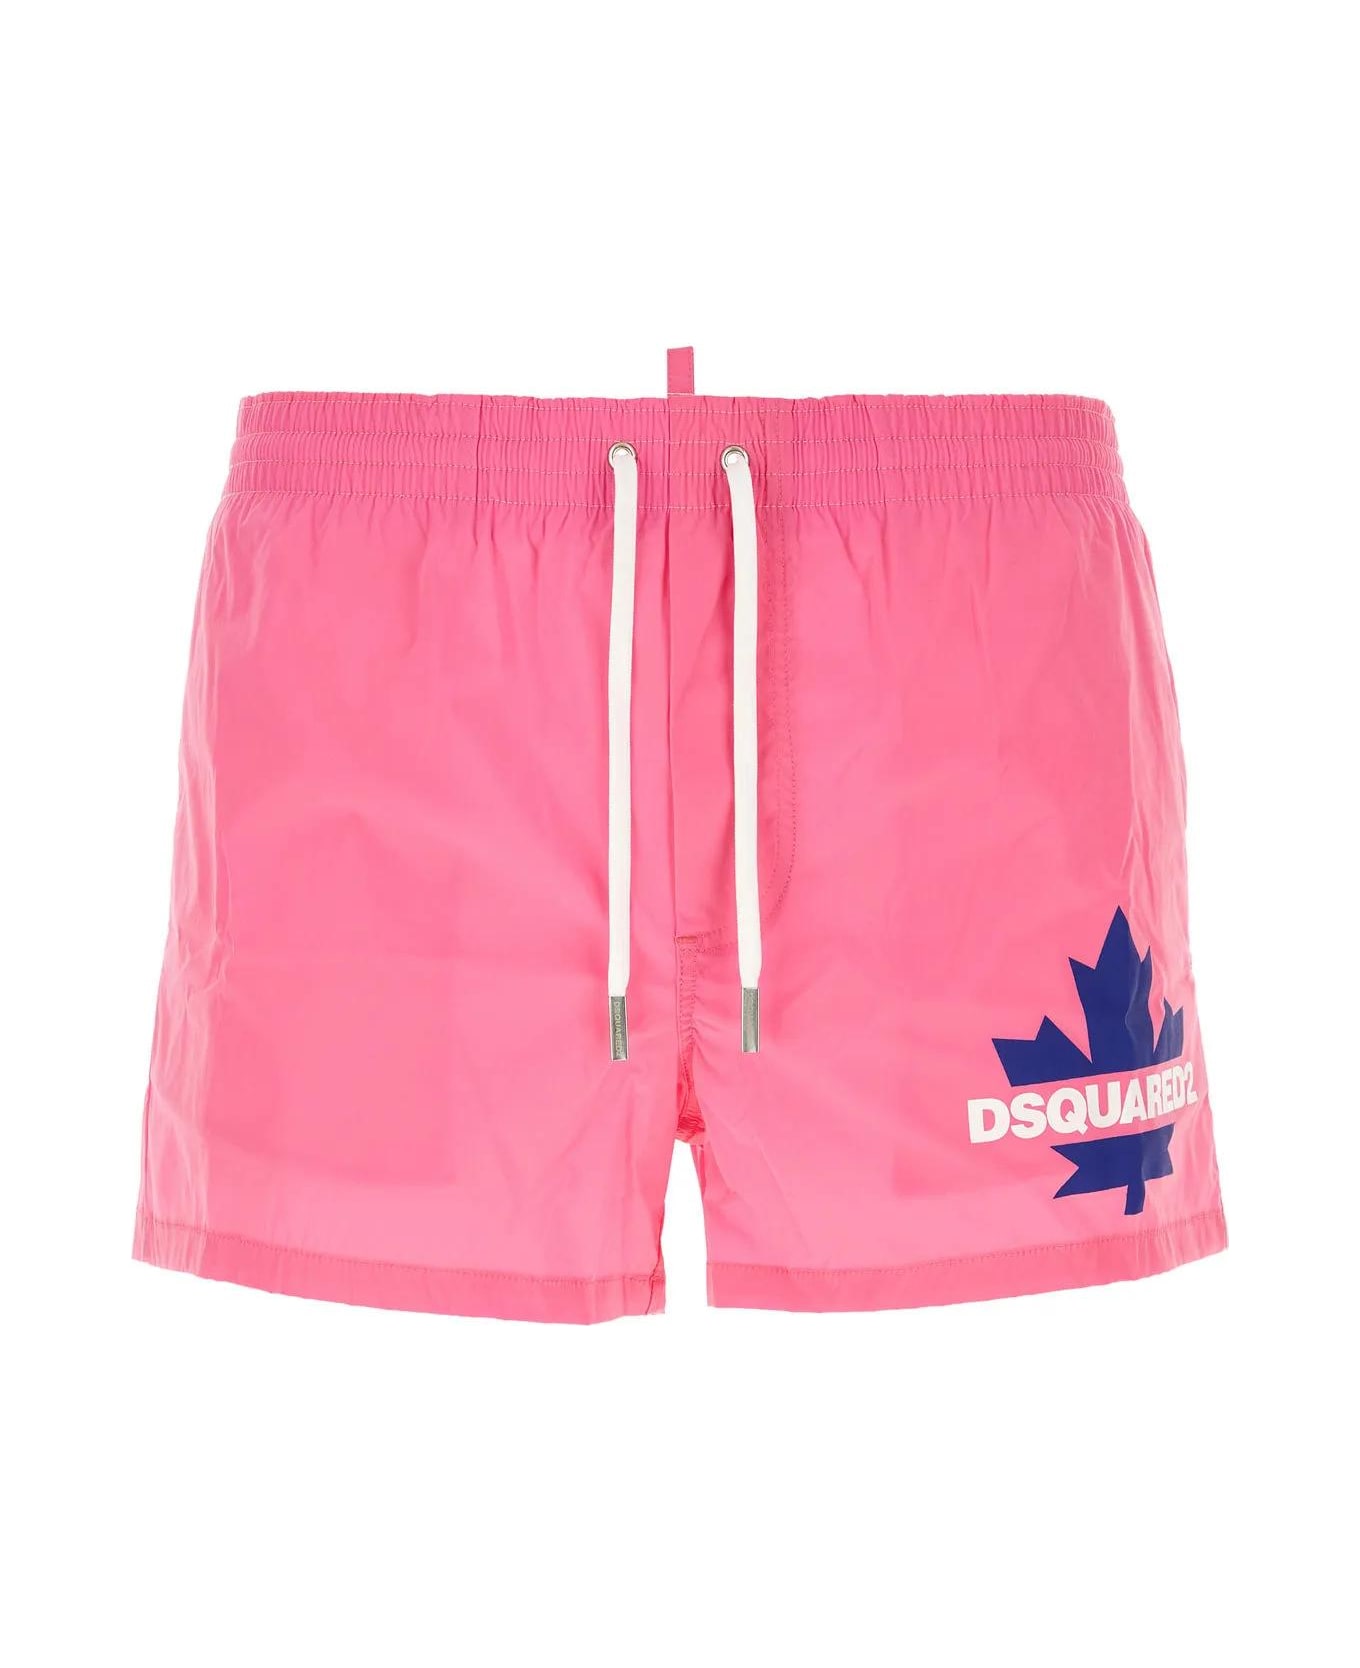 Dsquared2 Fuchsia Stretch Nylon Swimming Shorts - Rosa